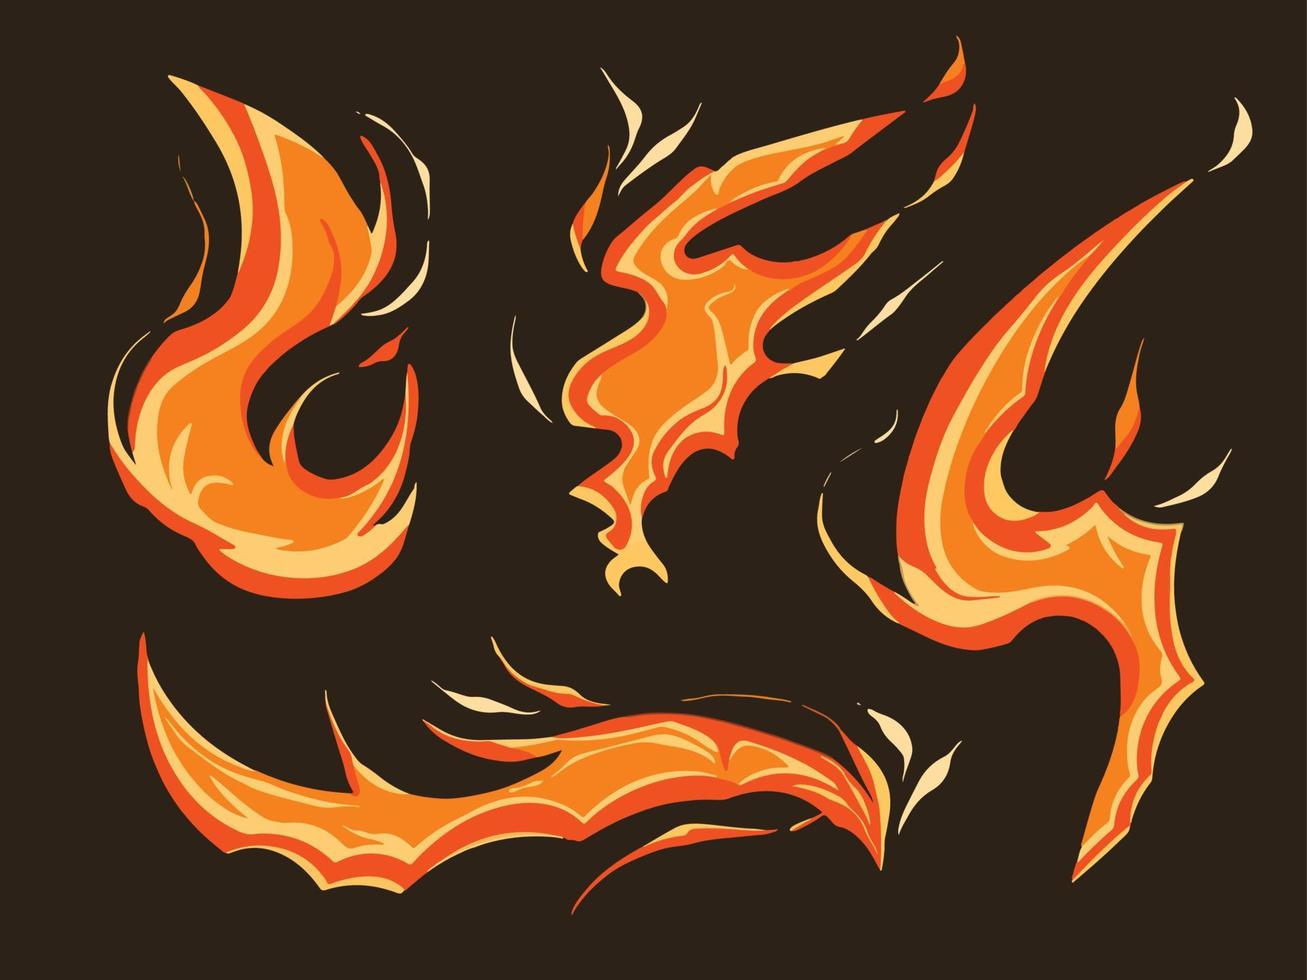 conjunto de colección de llamas de fuego ardiendo ilustración de vector de decoración de elementos de recursos gráficos calientes. decoración de estilo de arte plano de dibujos animados de elemento caliente natural